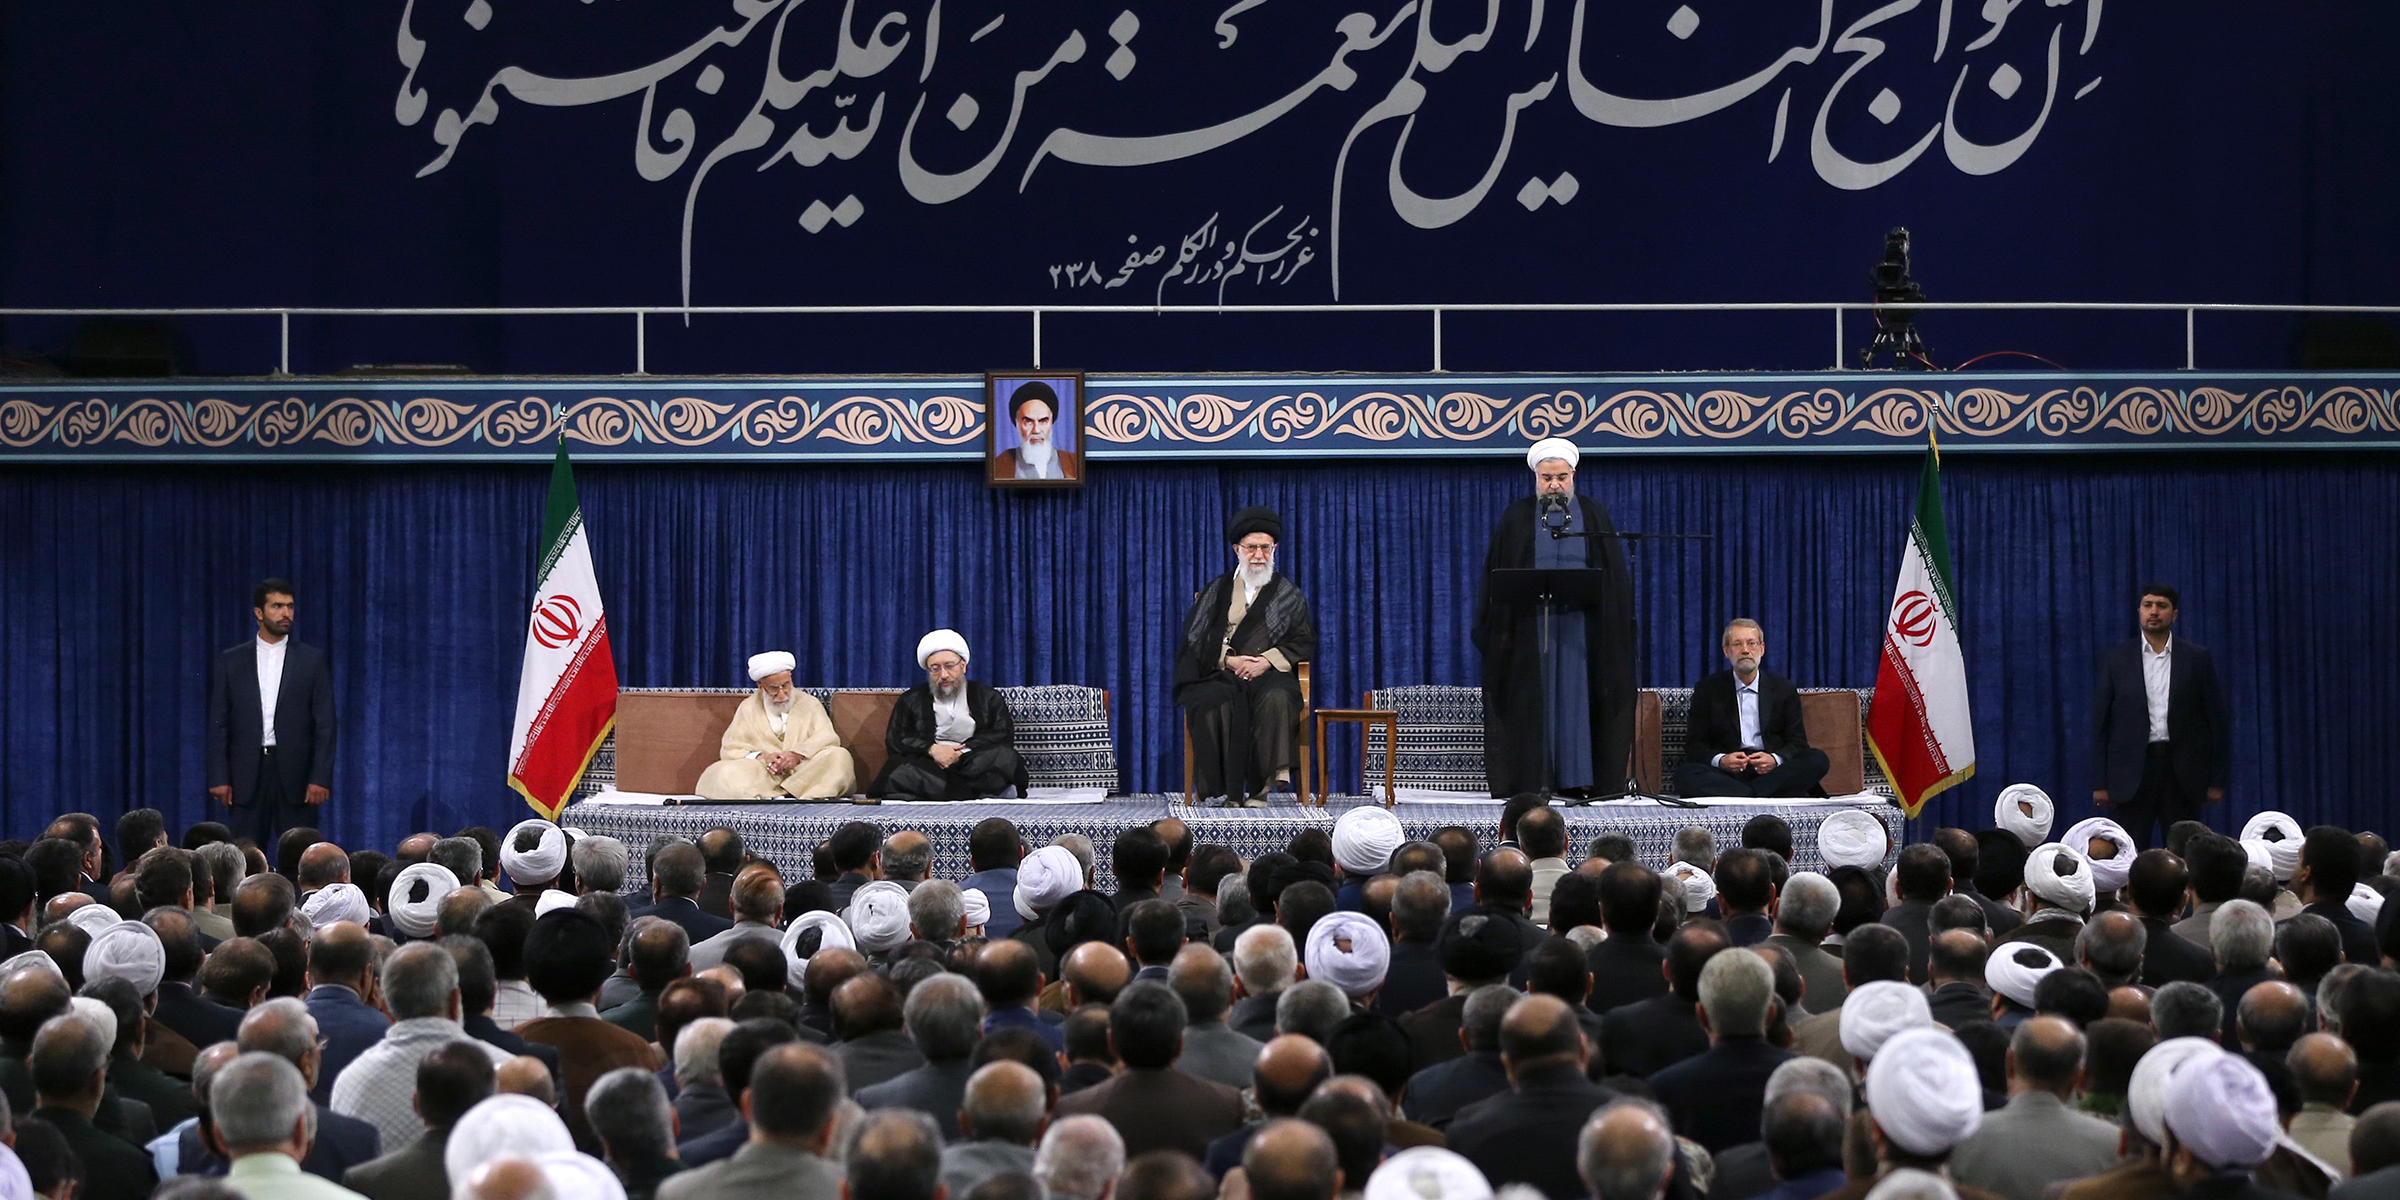 جمهوری اسلامی ایران ترکیبی از جمهوریت و اسلامیت است و نباید هیچ یک از آن دو را نادیده گرفت